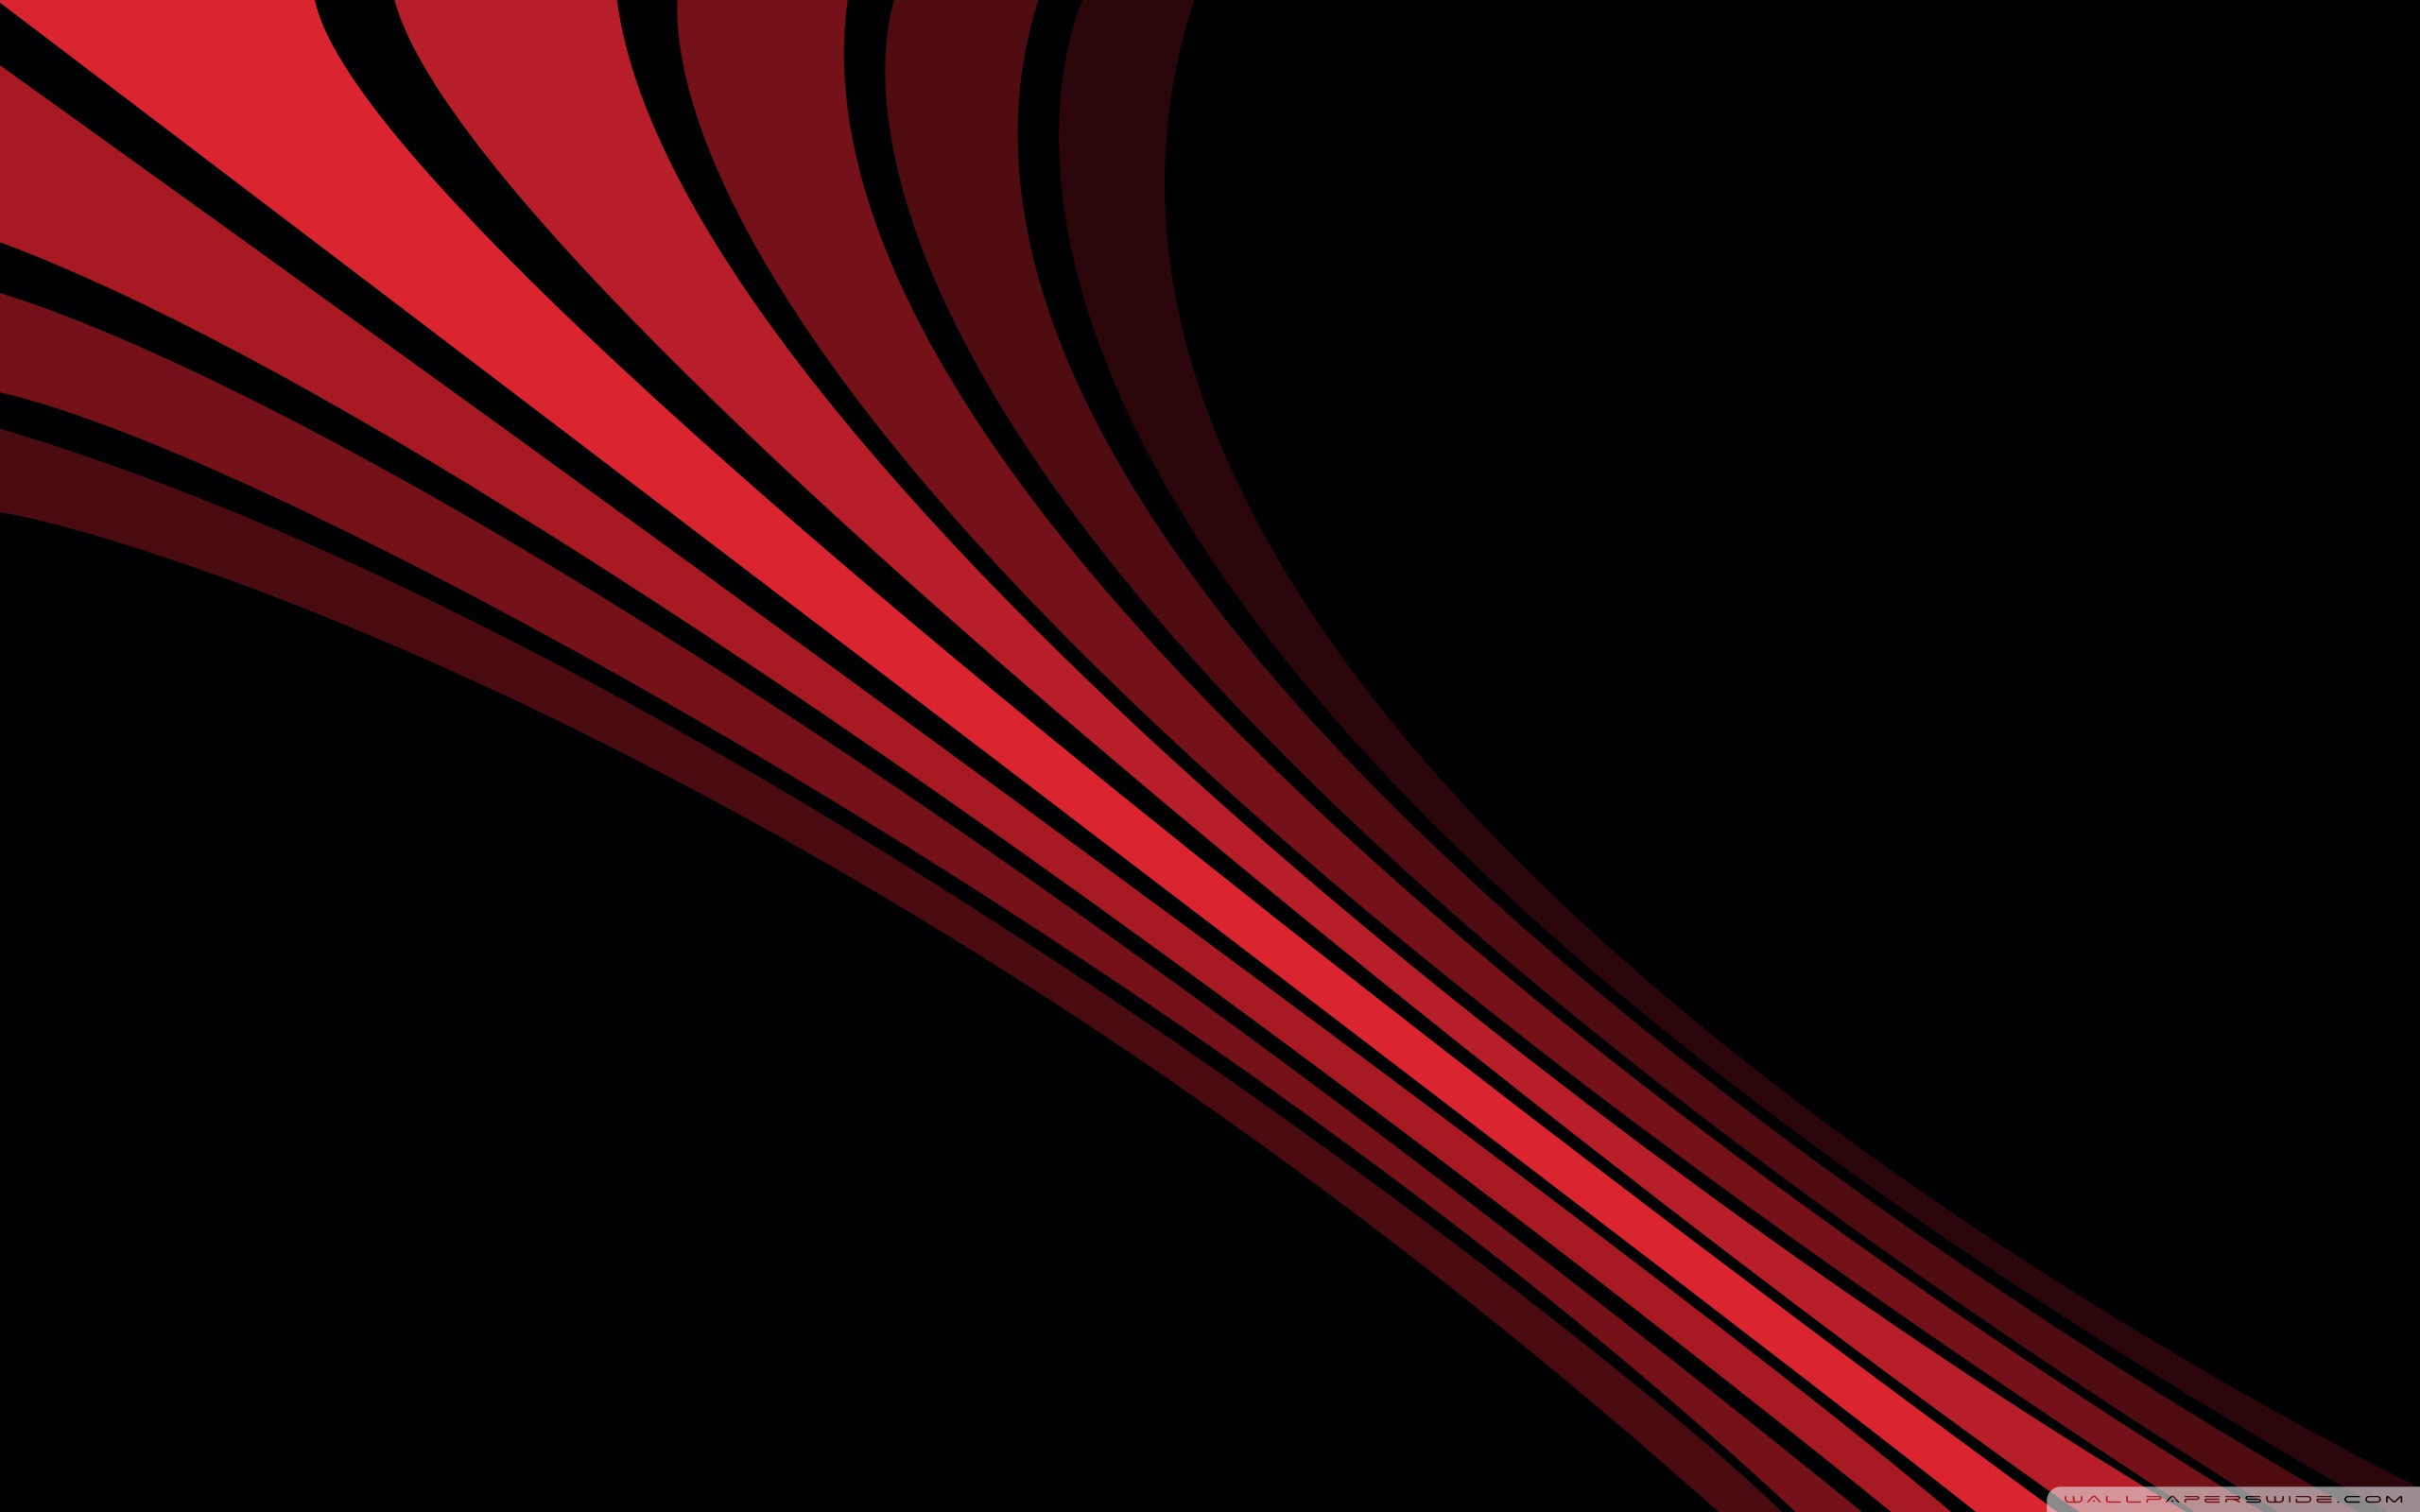 Red Stripes Ultra HD Desktop Background Wallpaper for 4K UHD TV, Tablet